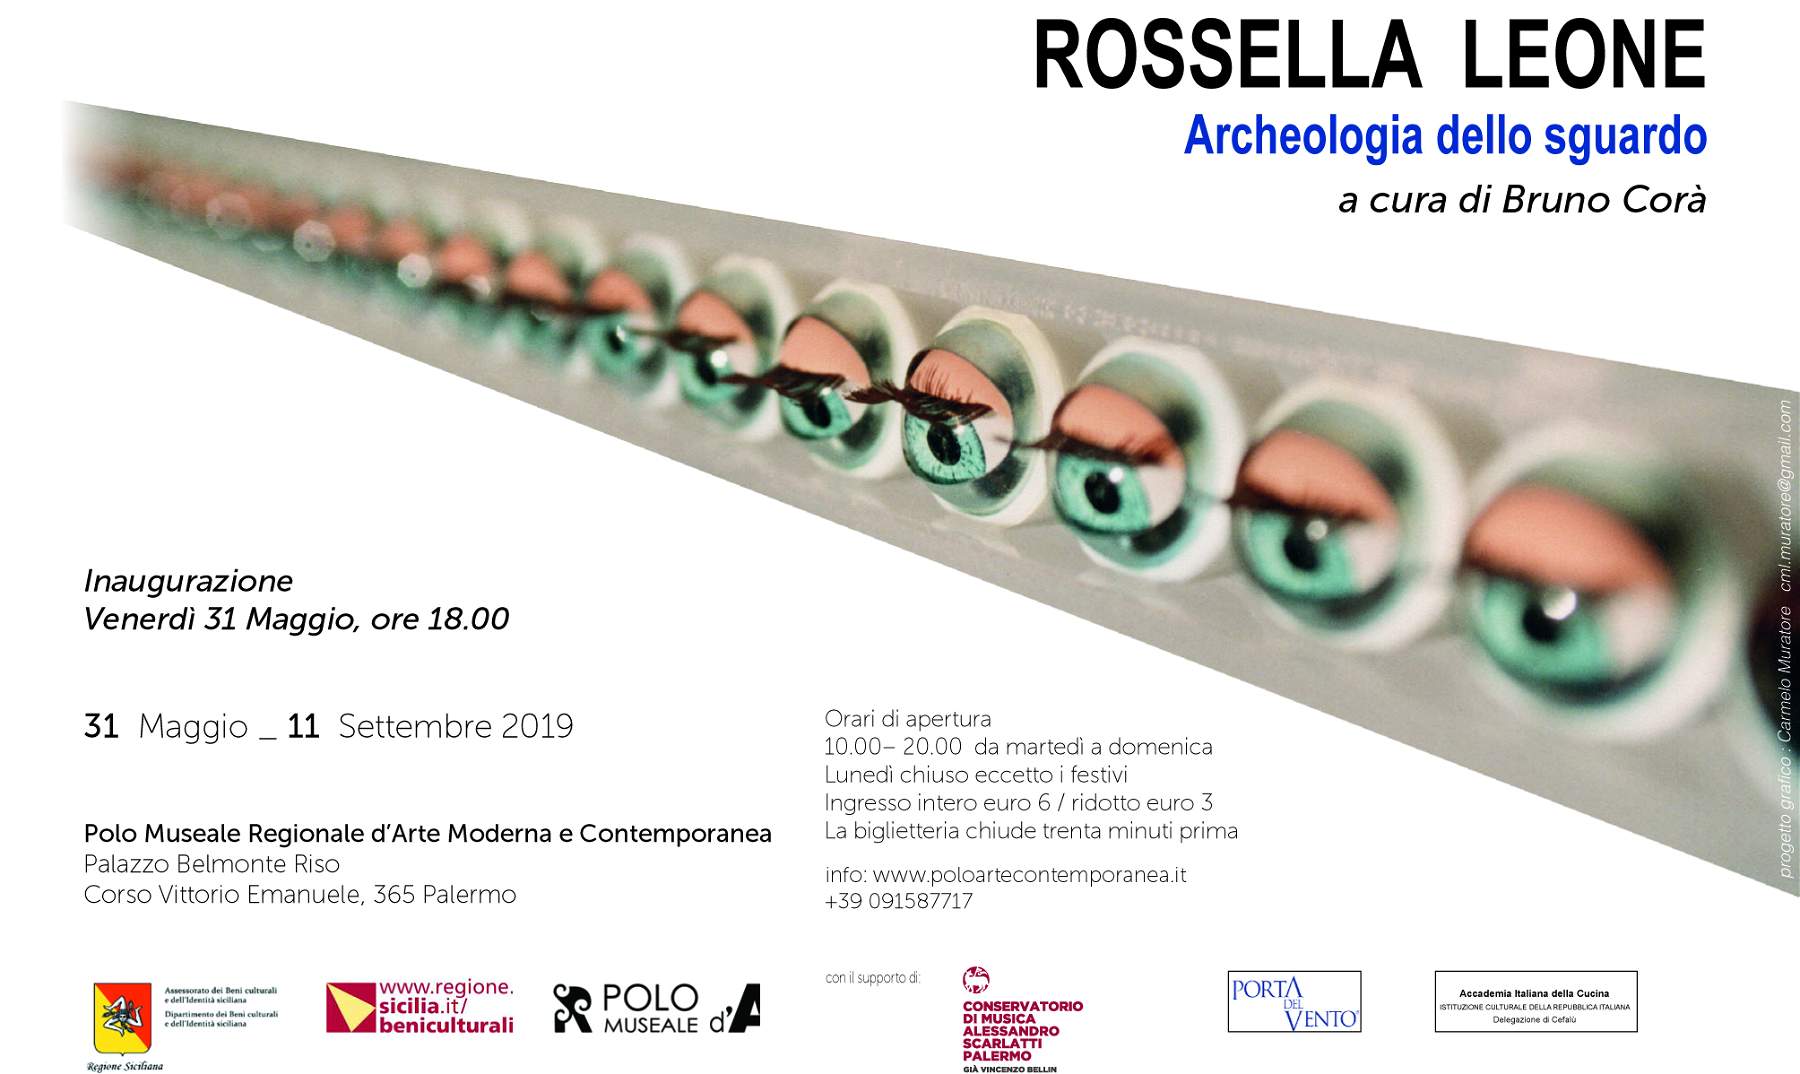 Les œuvres de Rossella Leone exposées dans le cadre de l'exposition 